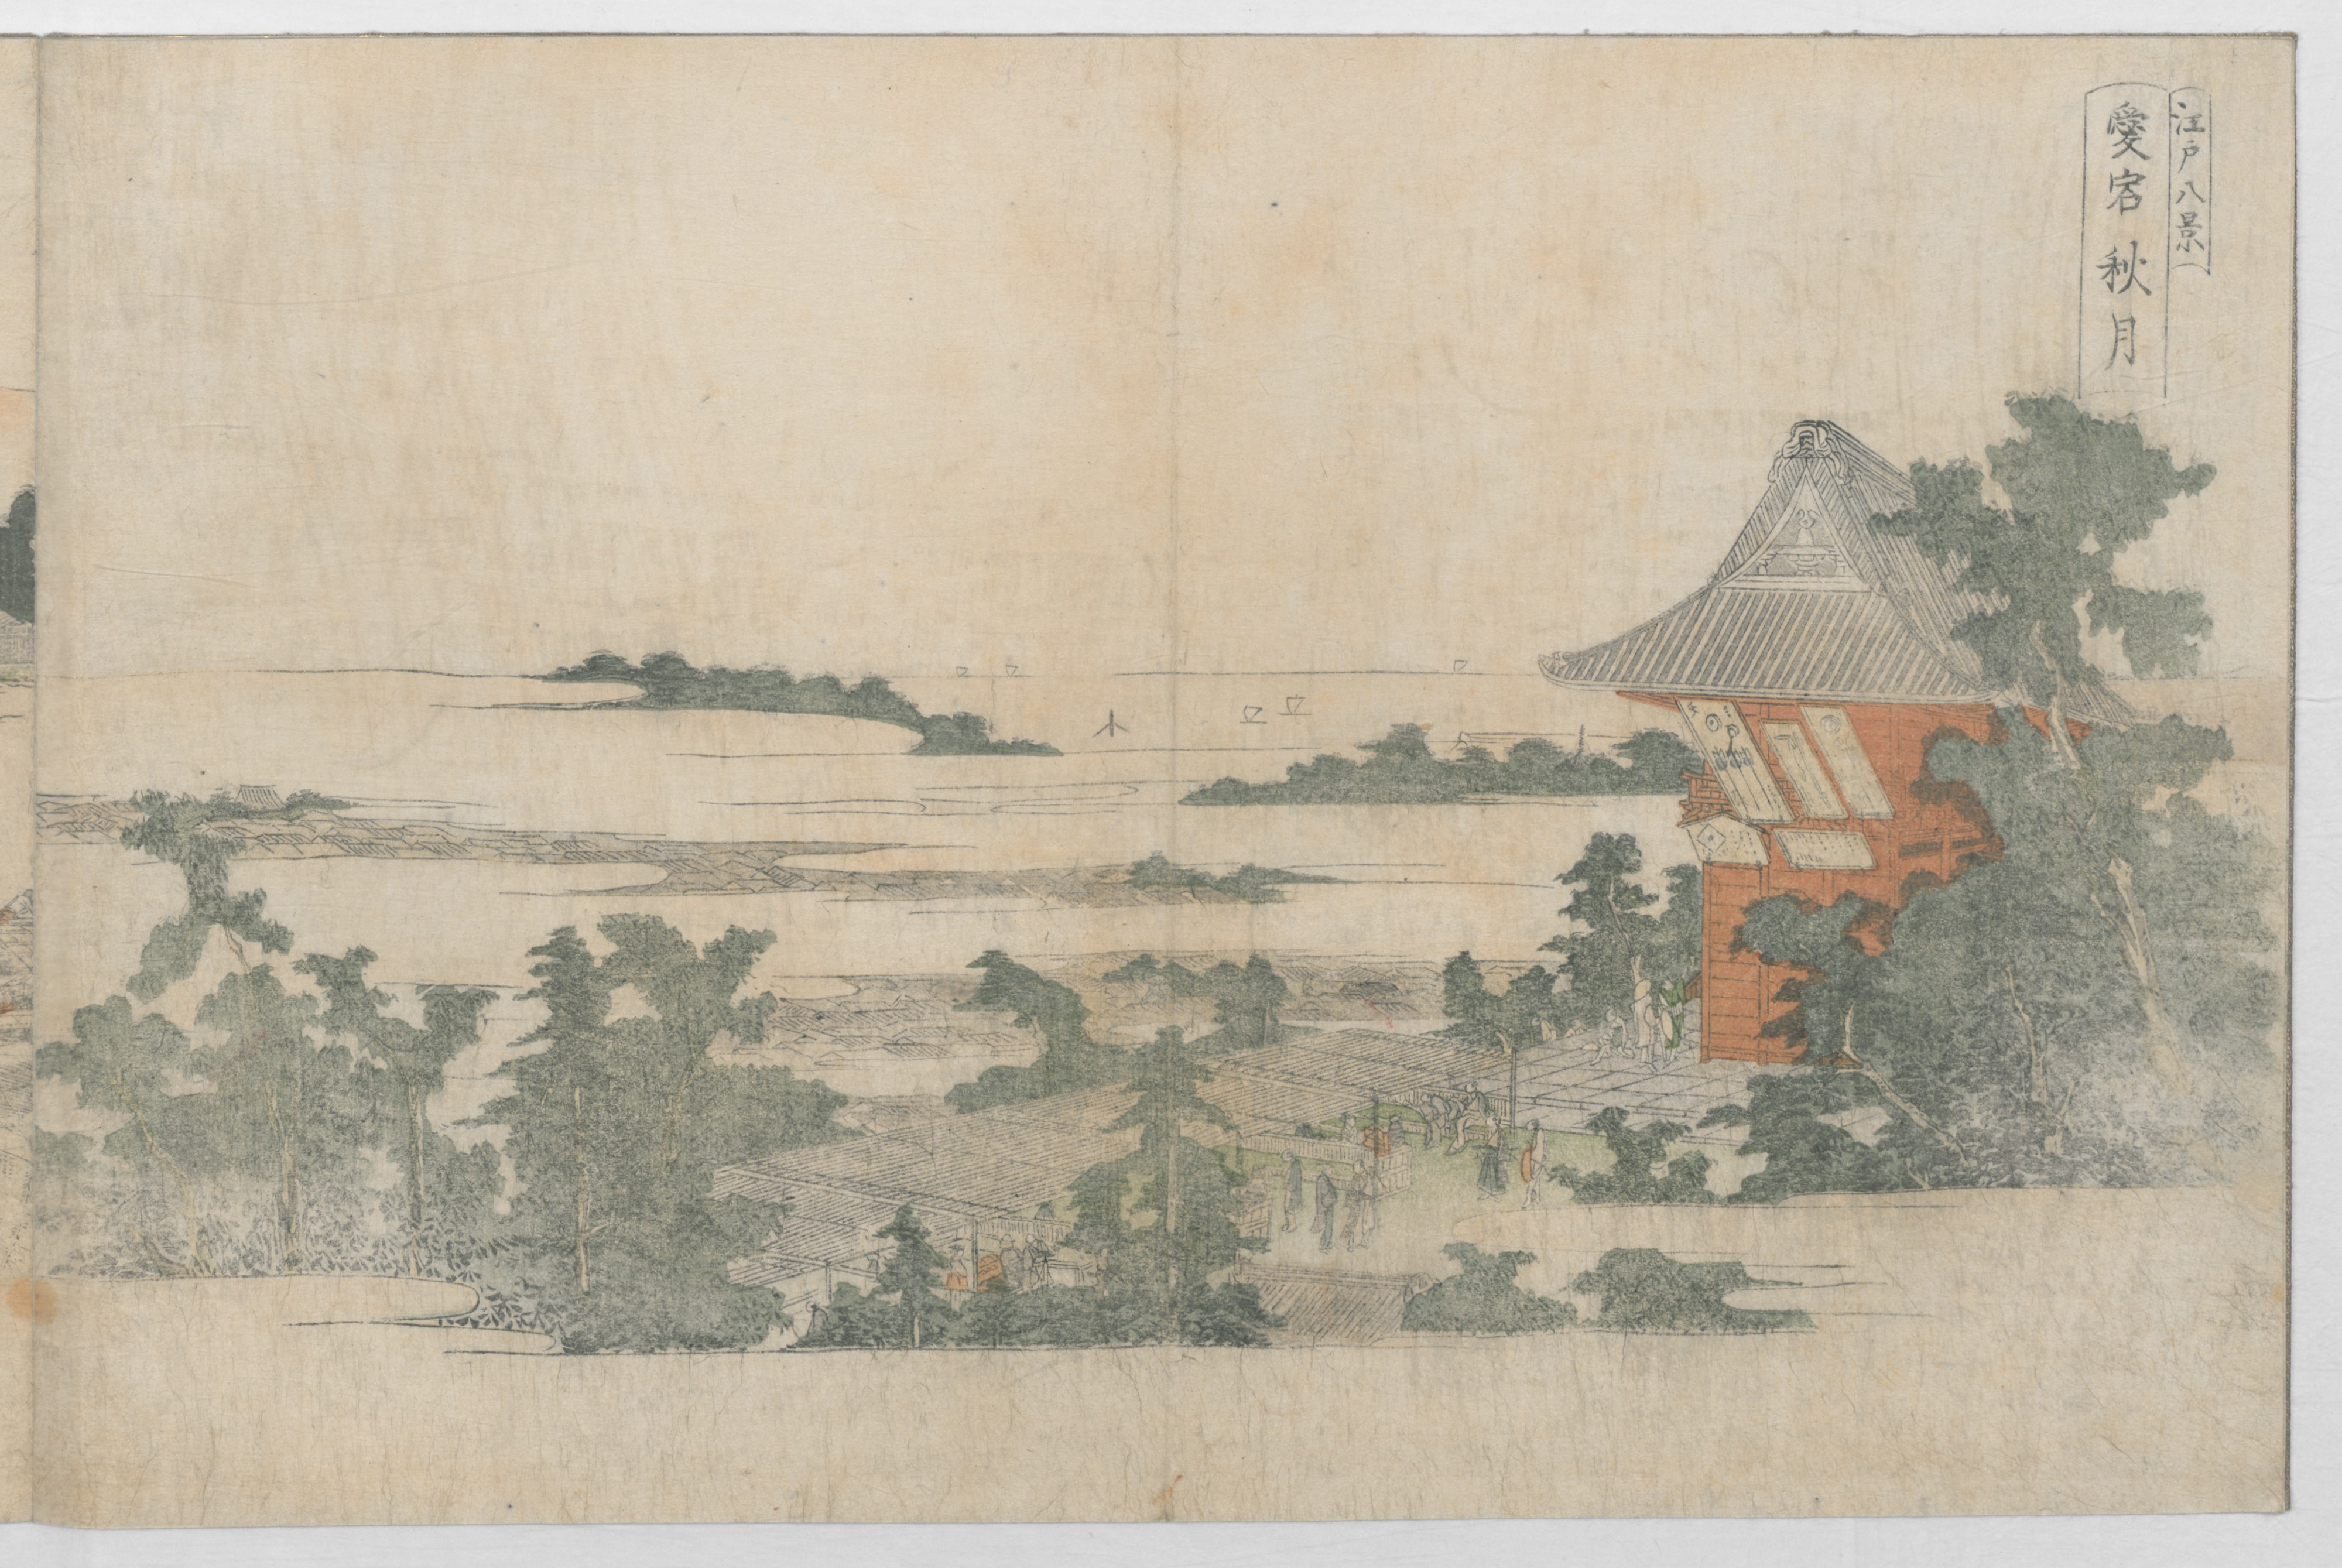 Utagawa Toyohiro (Ichiryūsai) 歌川 (一柳斎) 豊広 | Eight Views of 